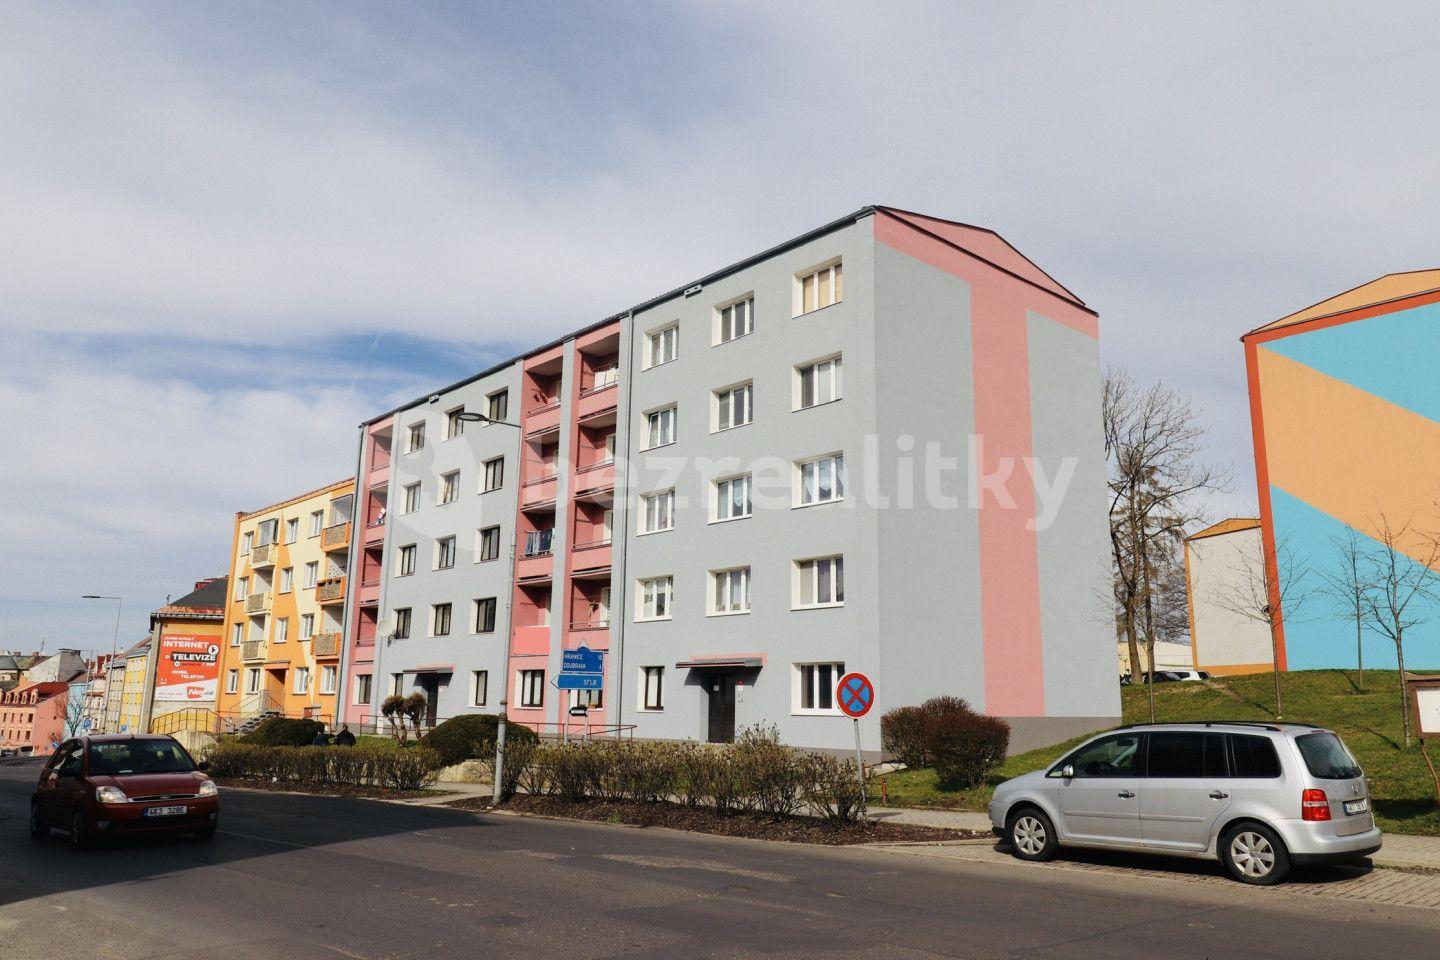 3 bedroom flat for sale, 68 m², Hlavní, Aš, Karlovarský Region